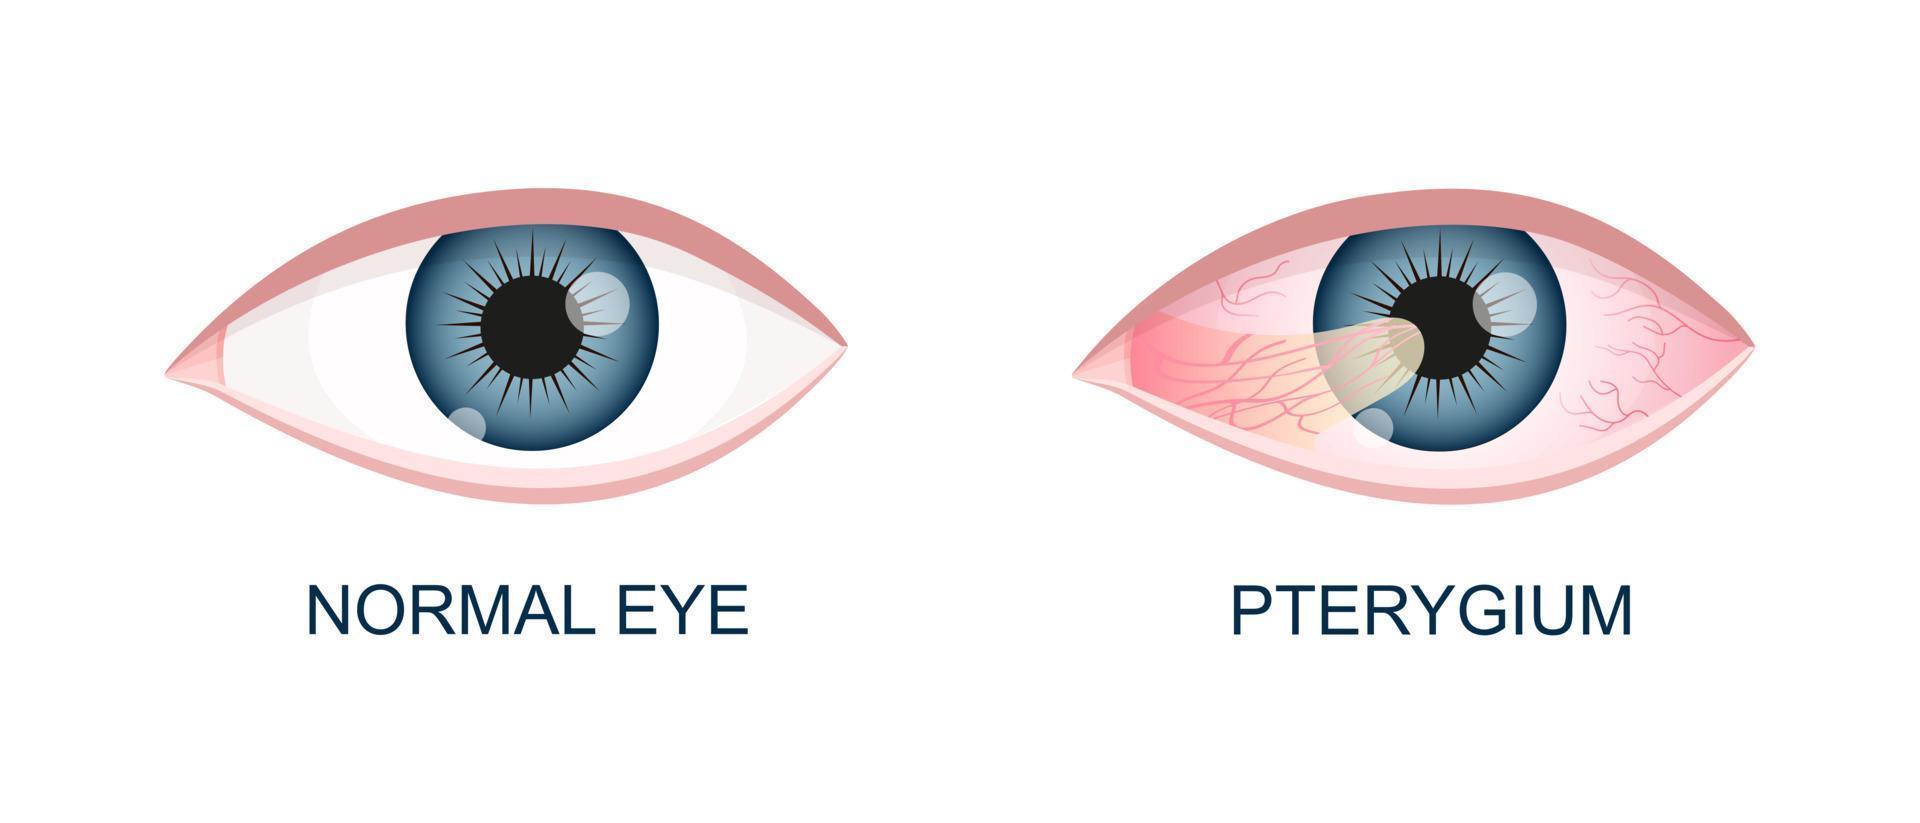 occhio salutare e con pterigio. congiuntivale degenerazione prima e dopo chirurgia. occhio patologia. umano organo di visione con patologia vettore